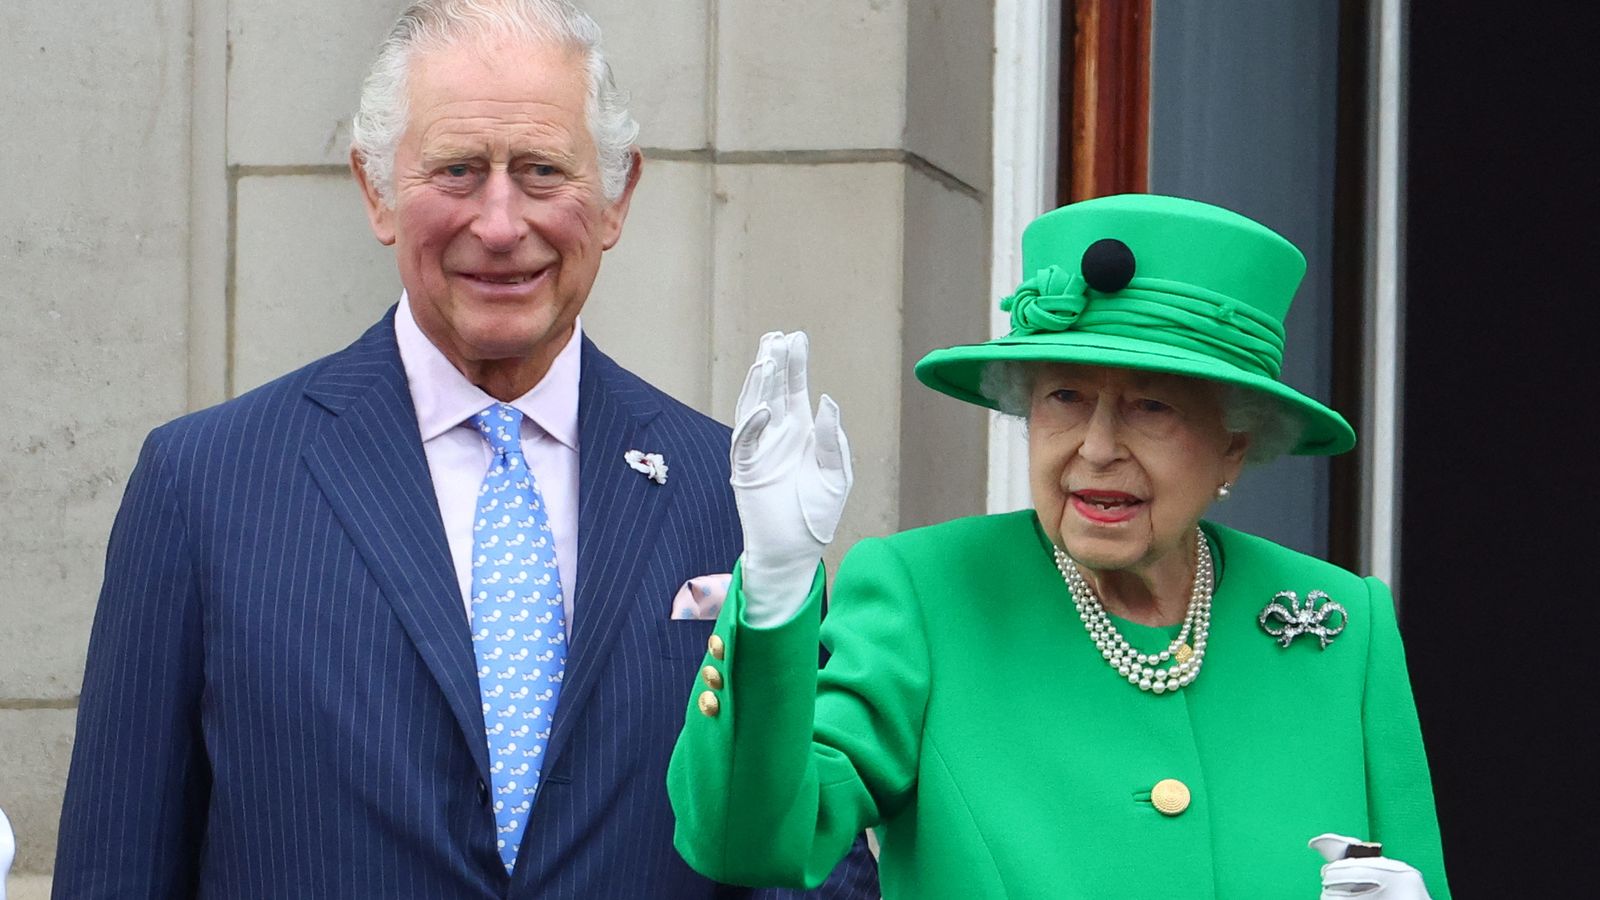 Le prince Charles devrait s’adresser aux pays du Commonwealth qui cherchent à rompre les liens avec la famille royale |  Nouvelles du monde